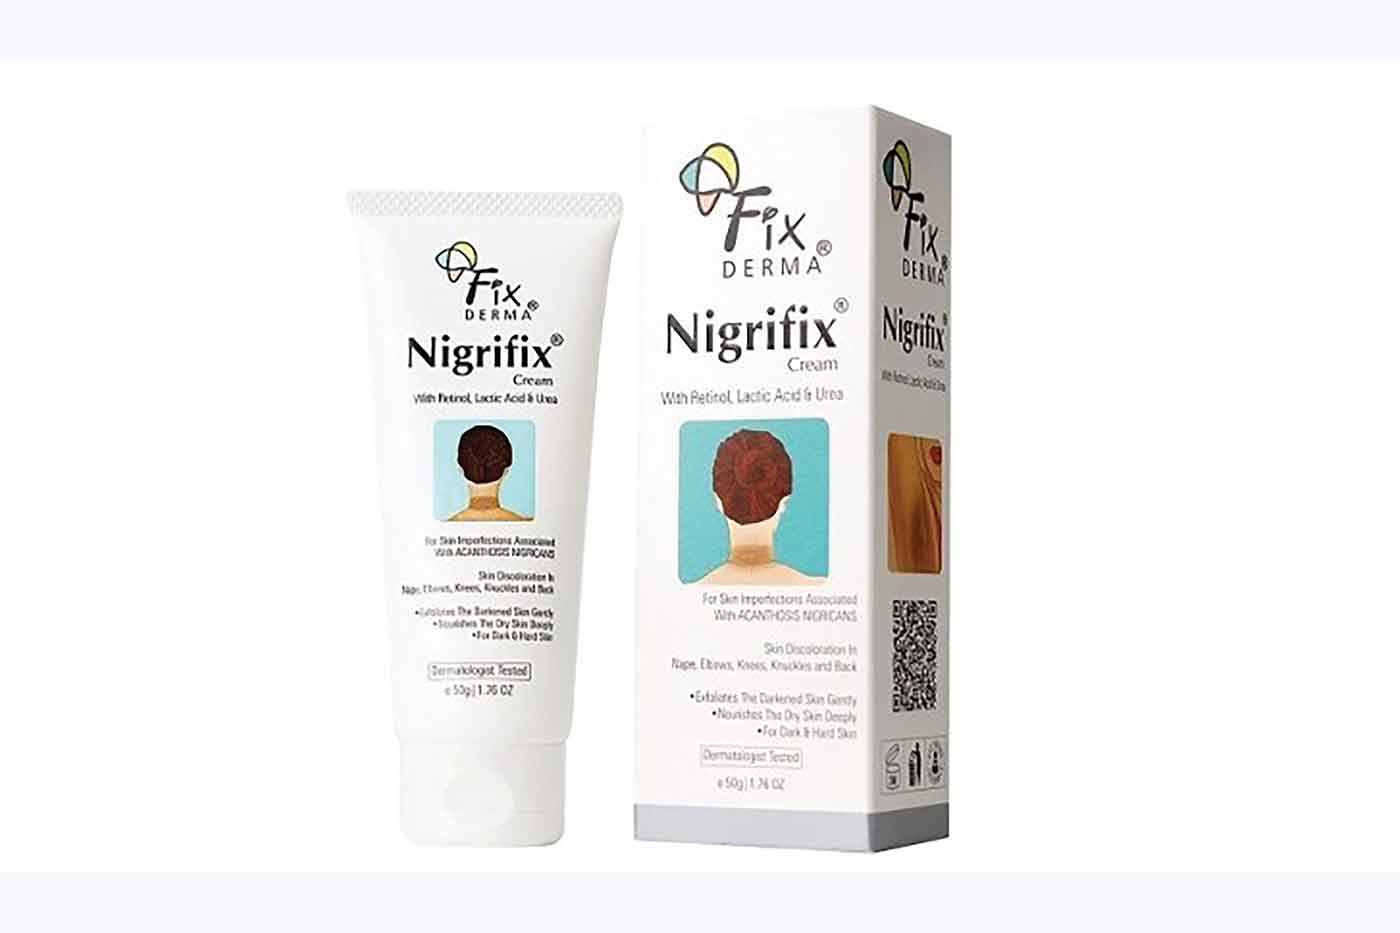 Fixderma Nigrifix cream treats rare skin pigmentation condition